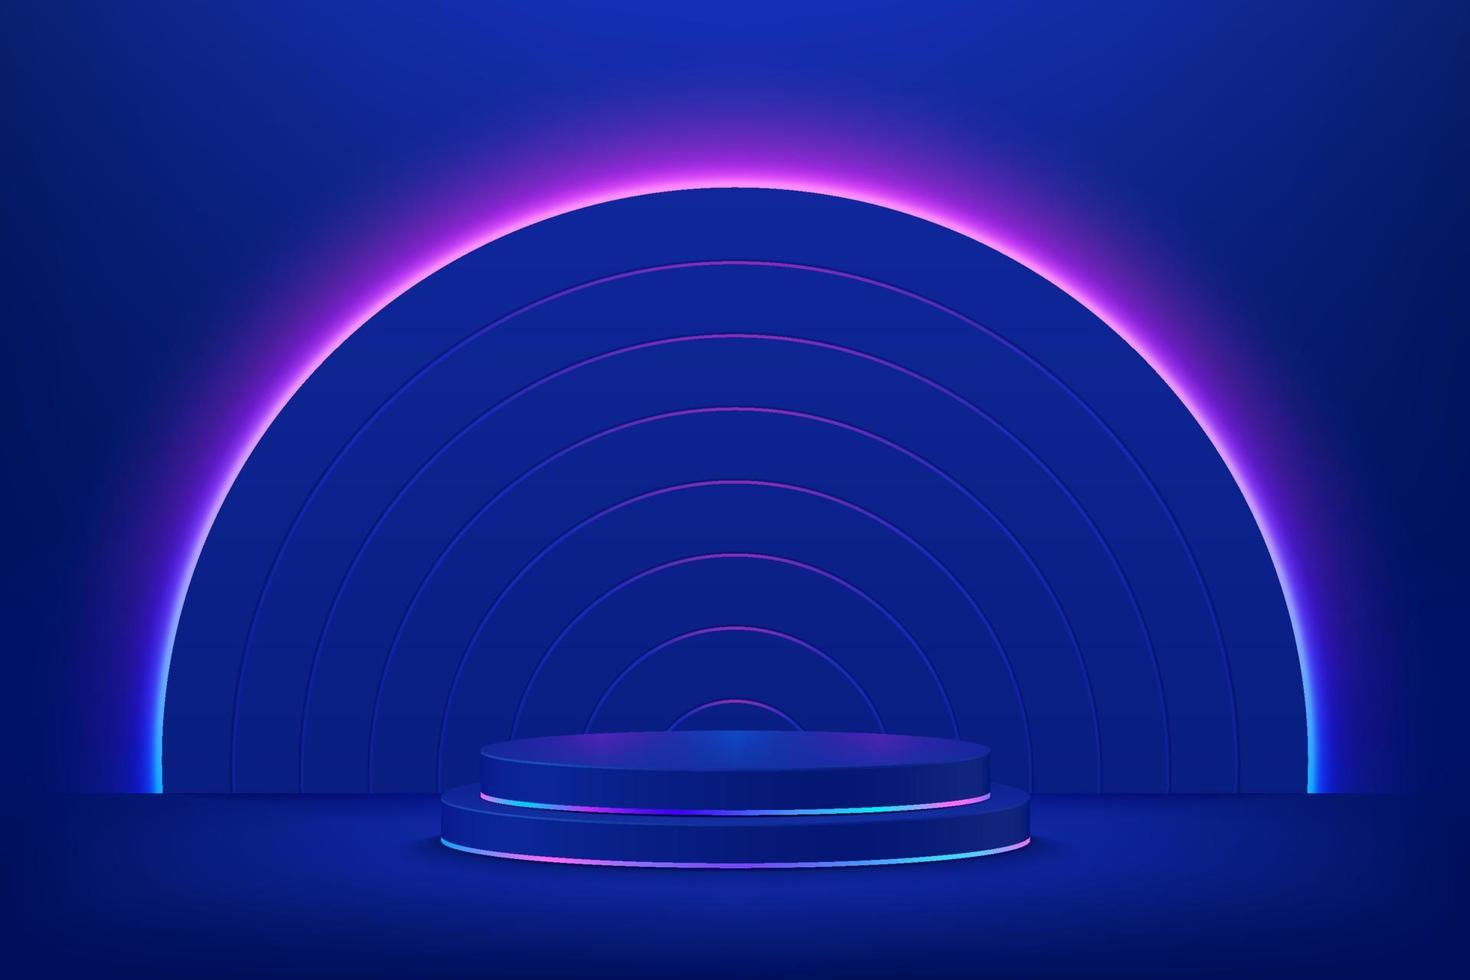 podio de pedestal de cilindro 3d azul oscuro realista. la habitación abstracta de ciencia ficción con semicírculo ilumina el fondo de luces de neón. formas geométricas de representación vectorial, etapa de visualización del producto. escena futurista. vector